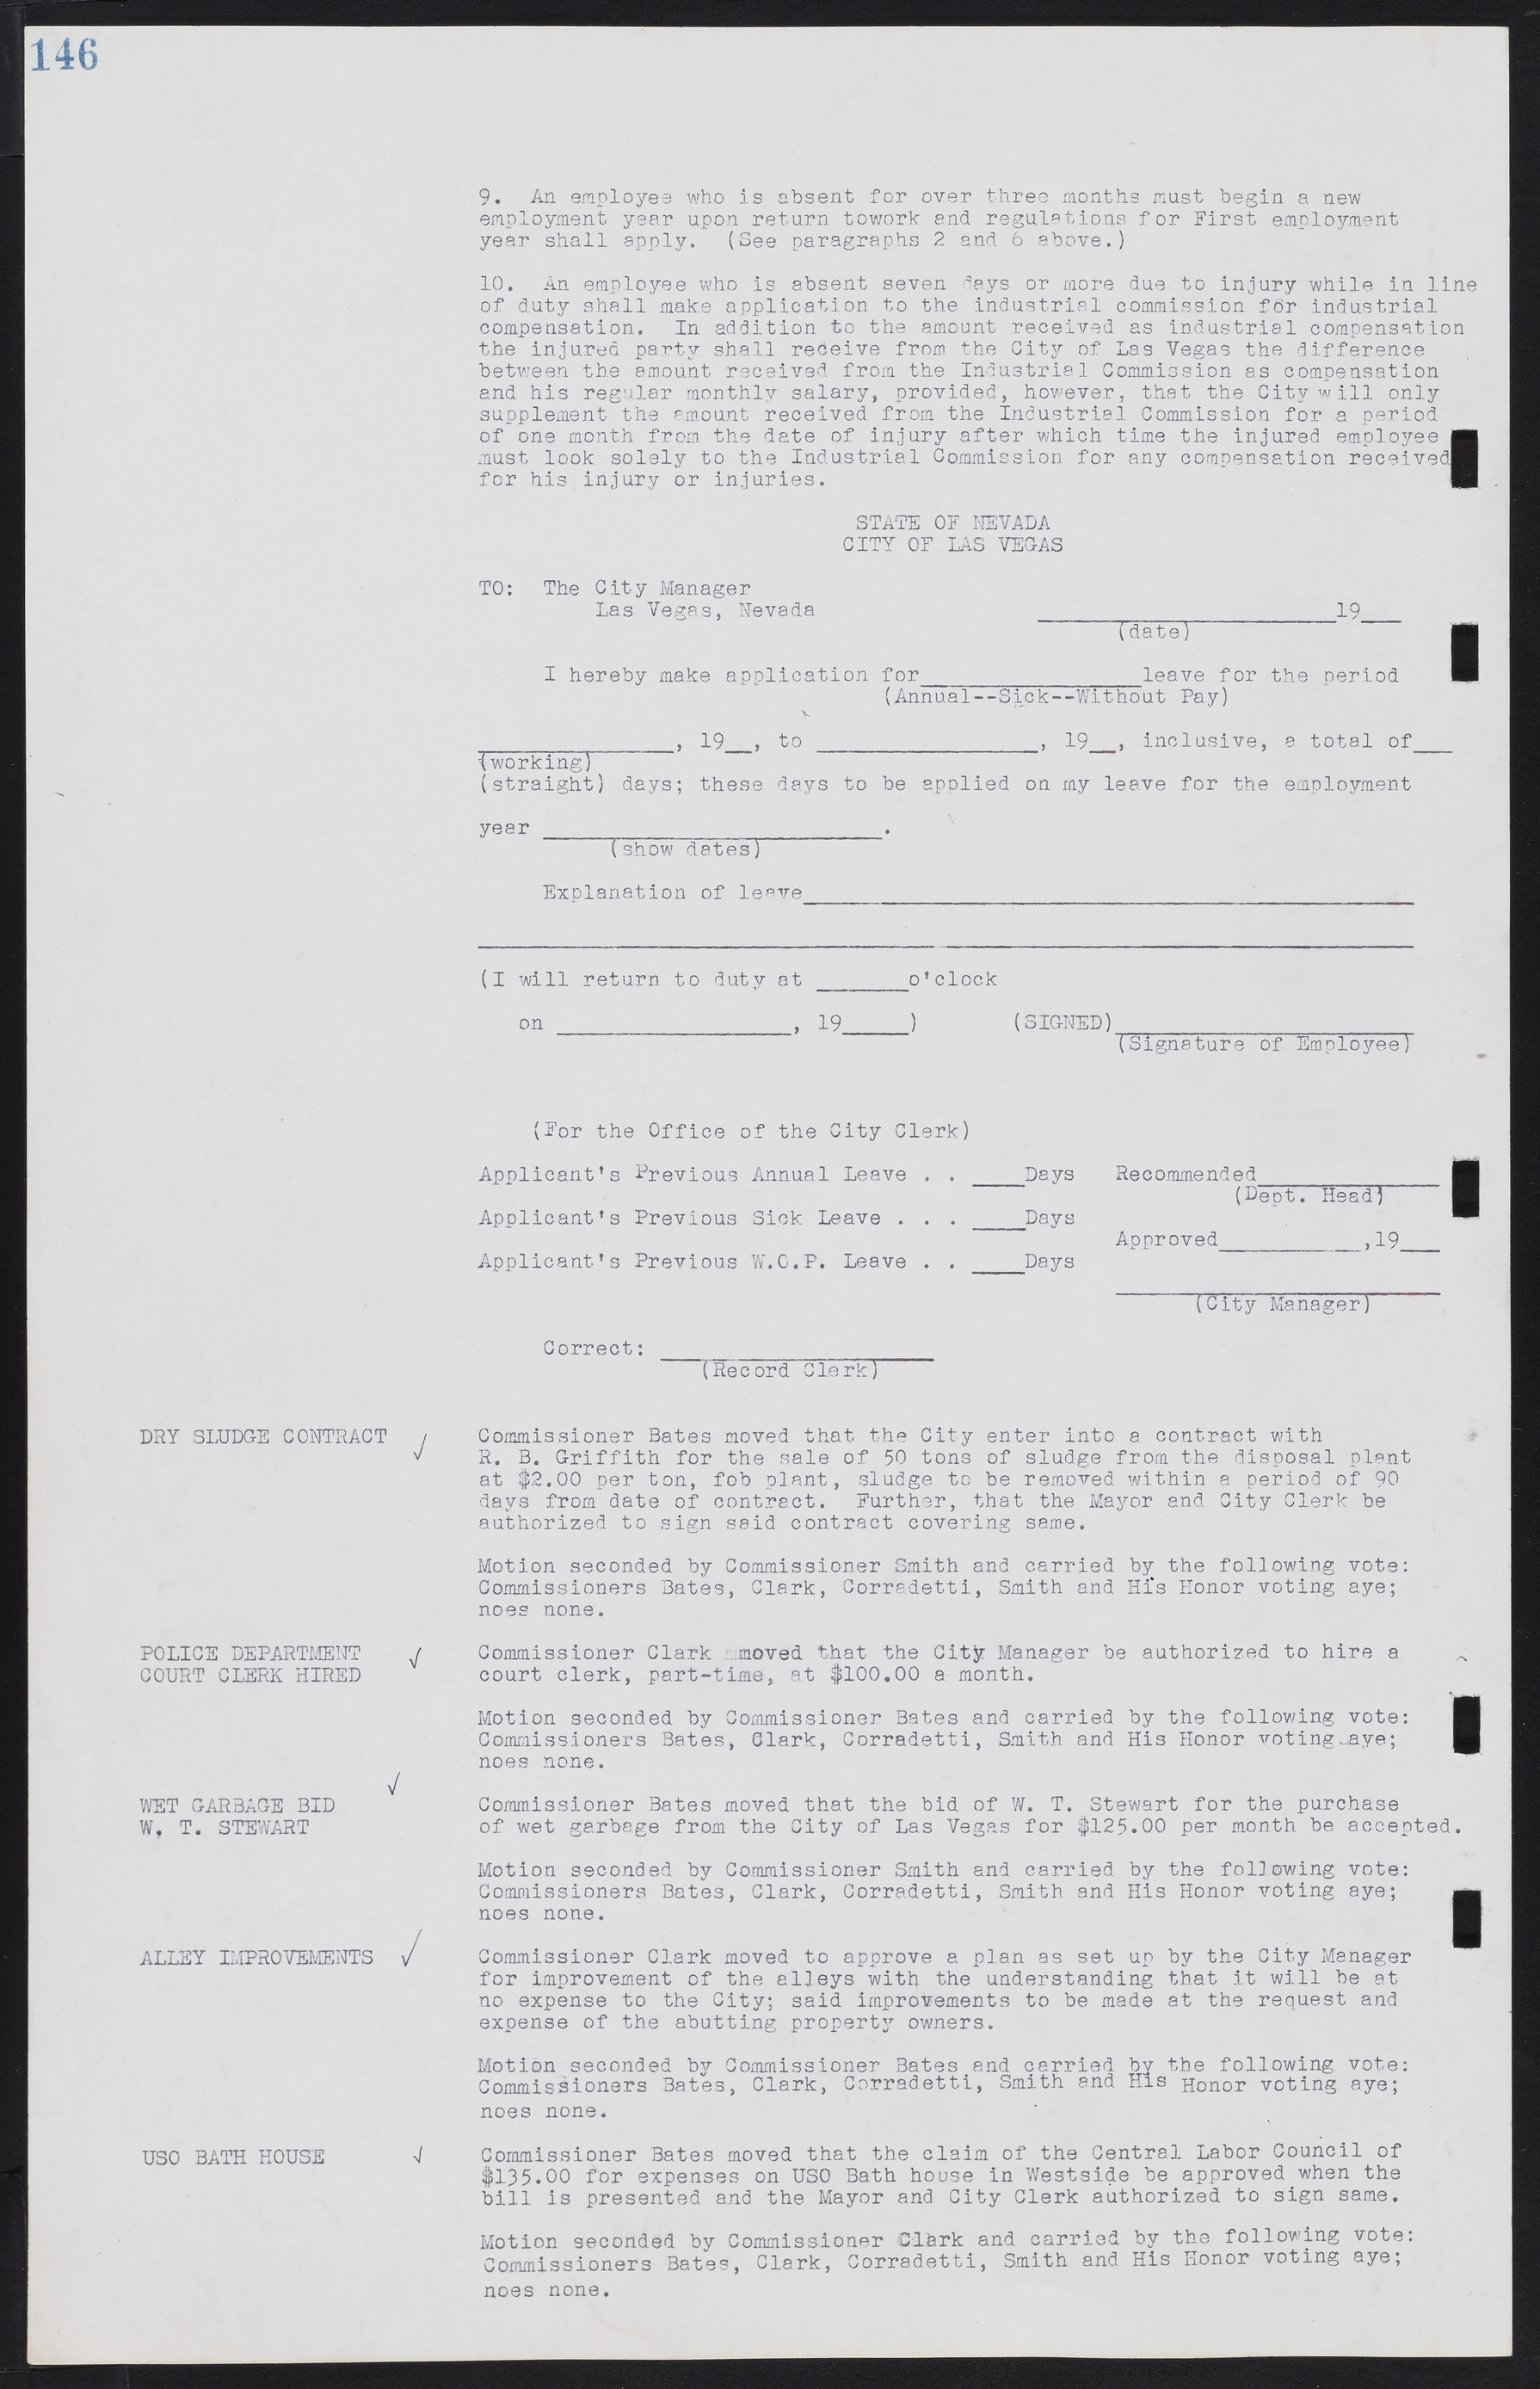 Las Vegas City Commission Minutes, August 11, 1942 to December 30, 1946, lvc000005-163